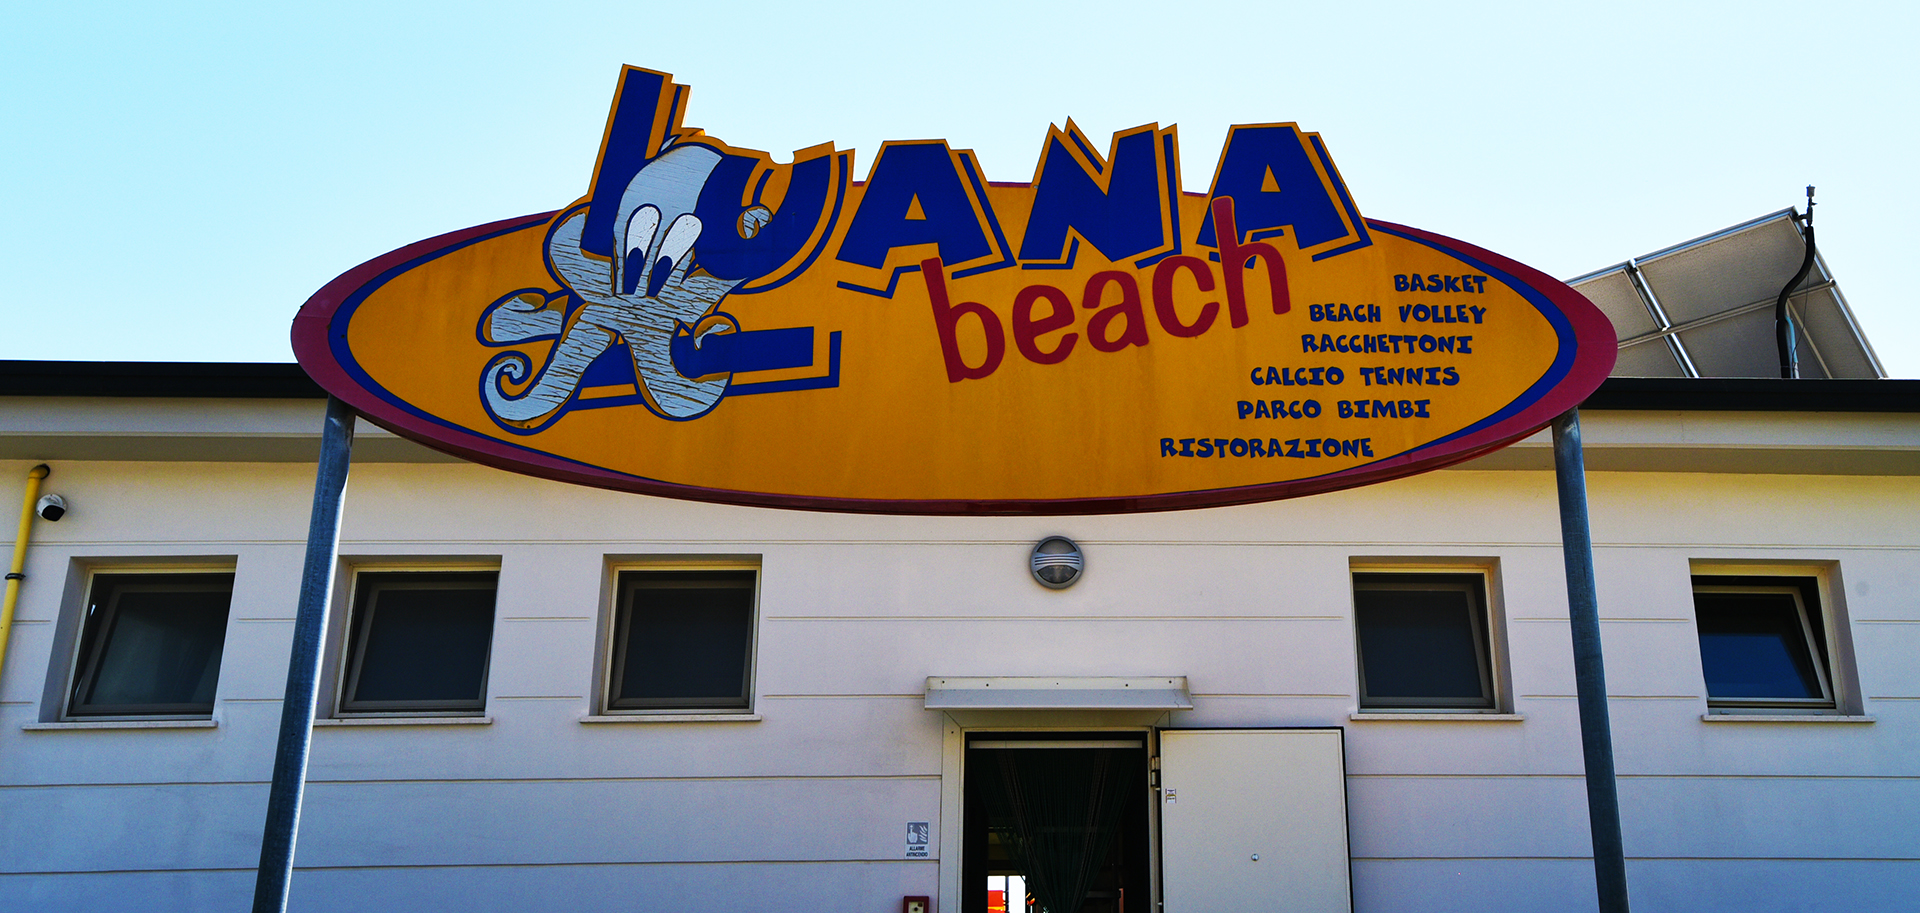 Luana Beach